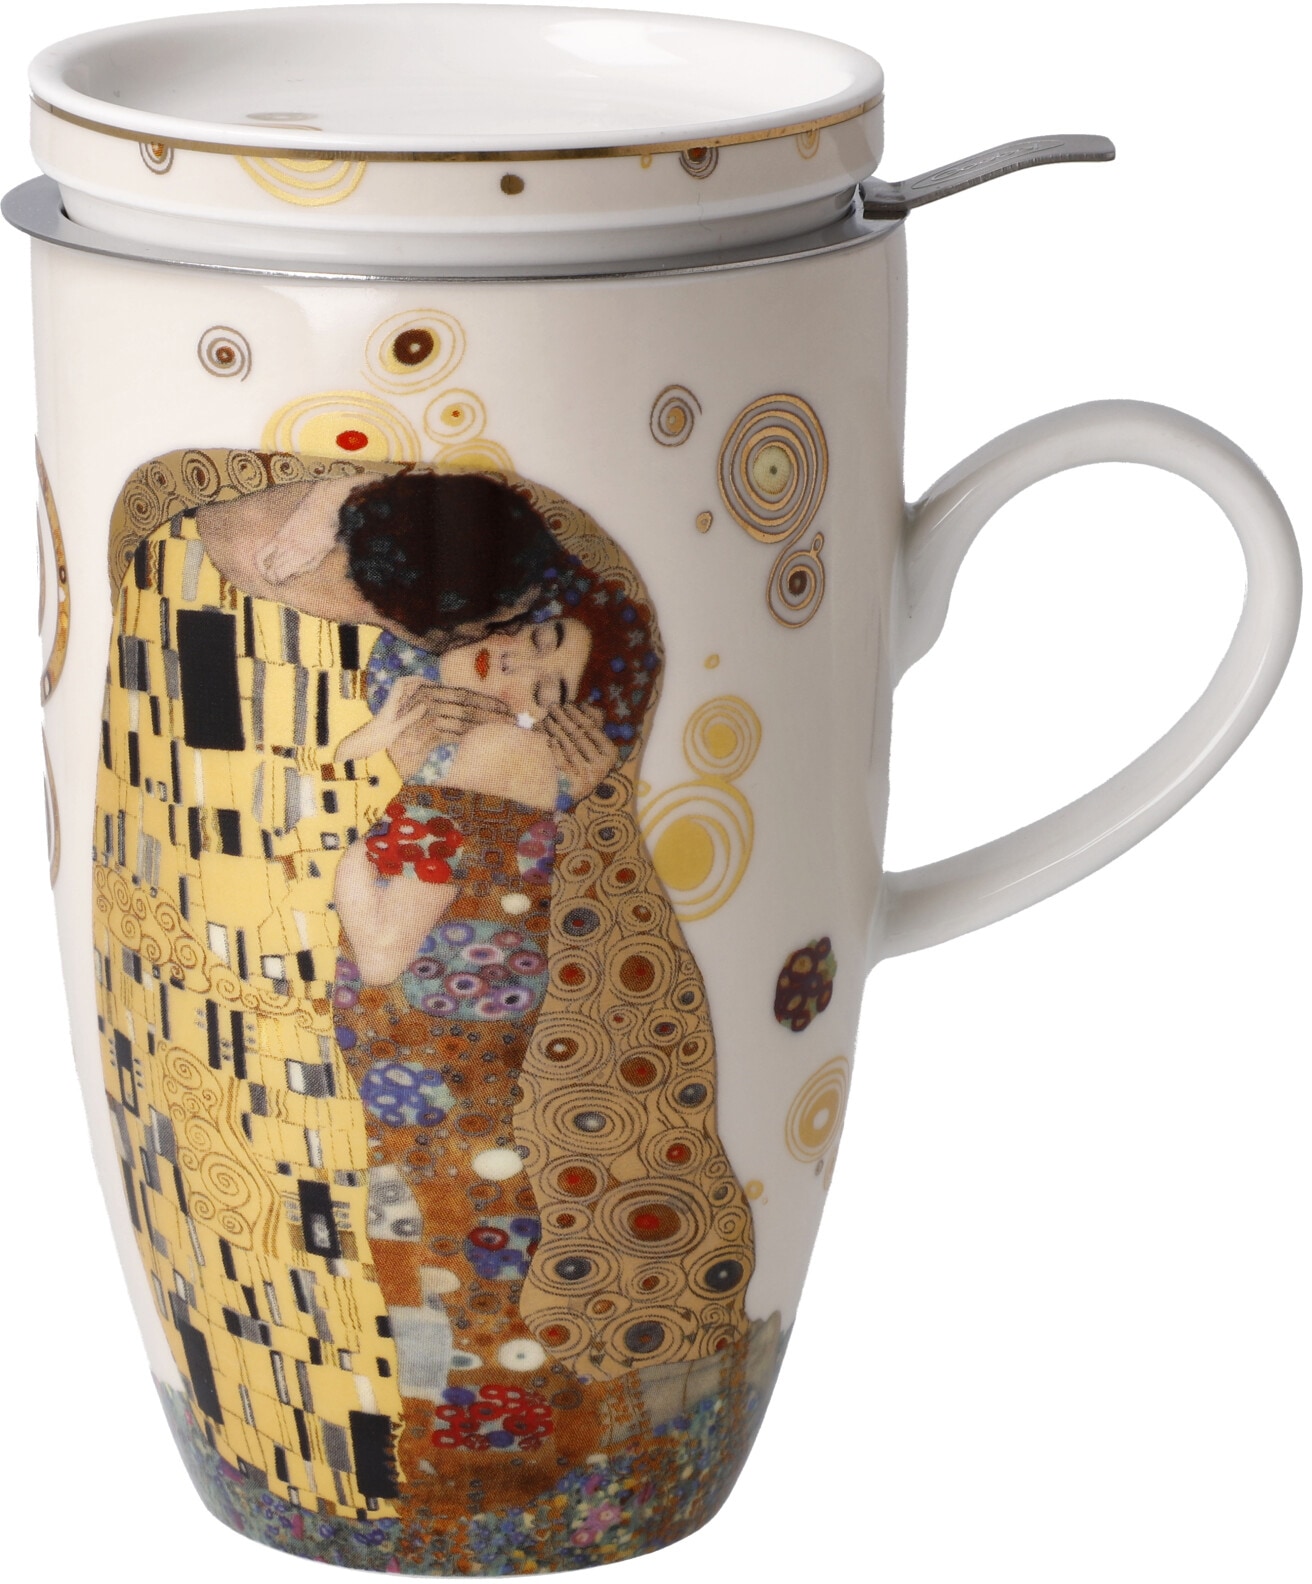 Goebel Tasse Klimt Artis Orbis Teetasse Mit Deckelsieb Metall Gustav Klimt Der Kuss 